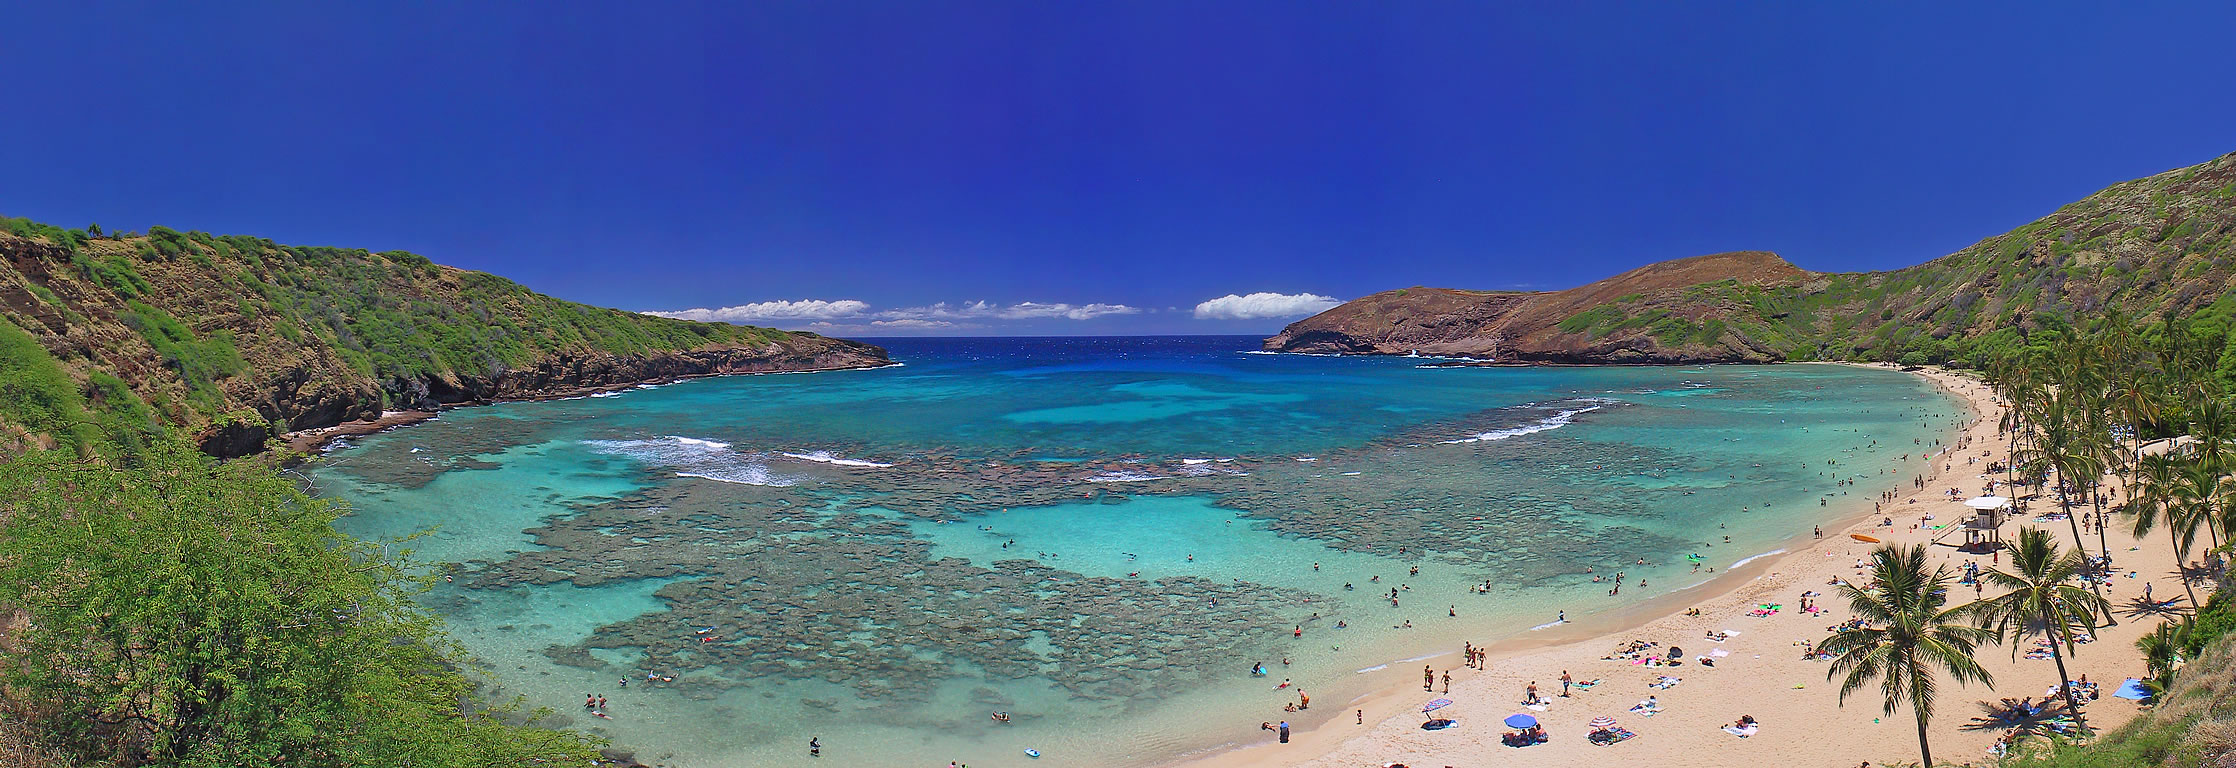  İşte Lost'un çekildiği Ada : Oahu (Hawaii)